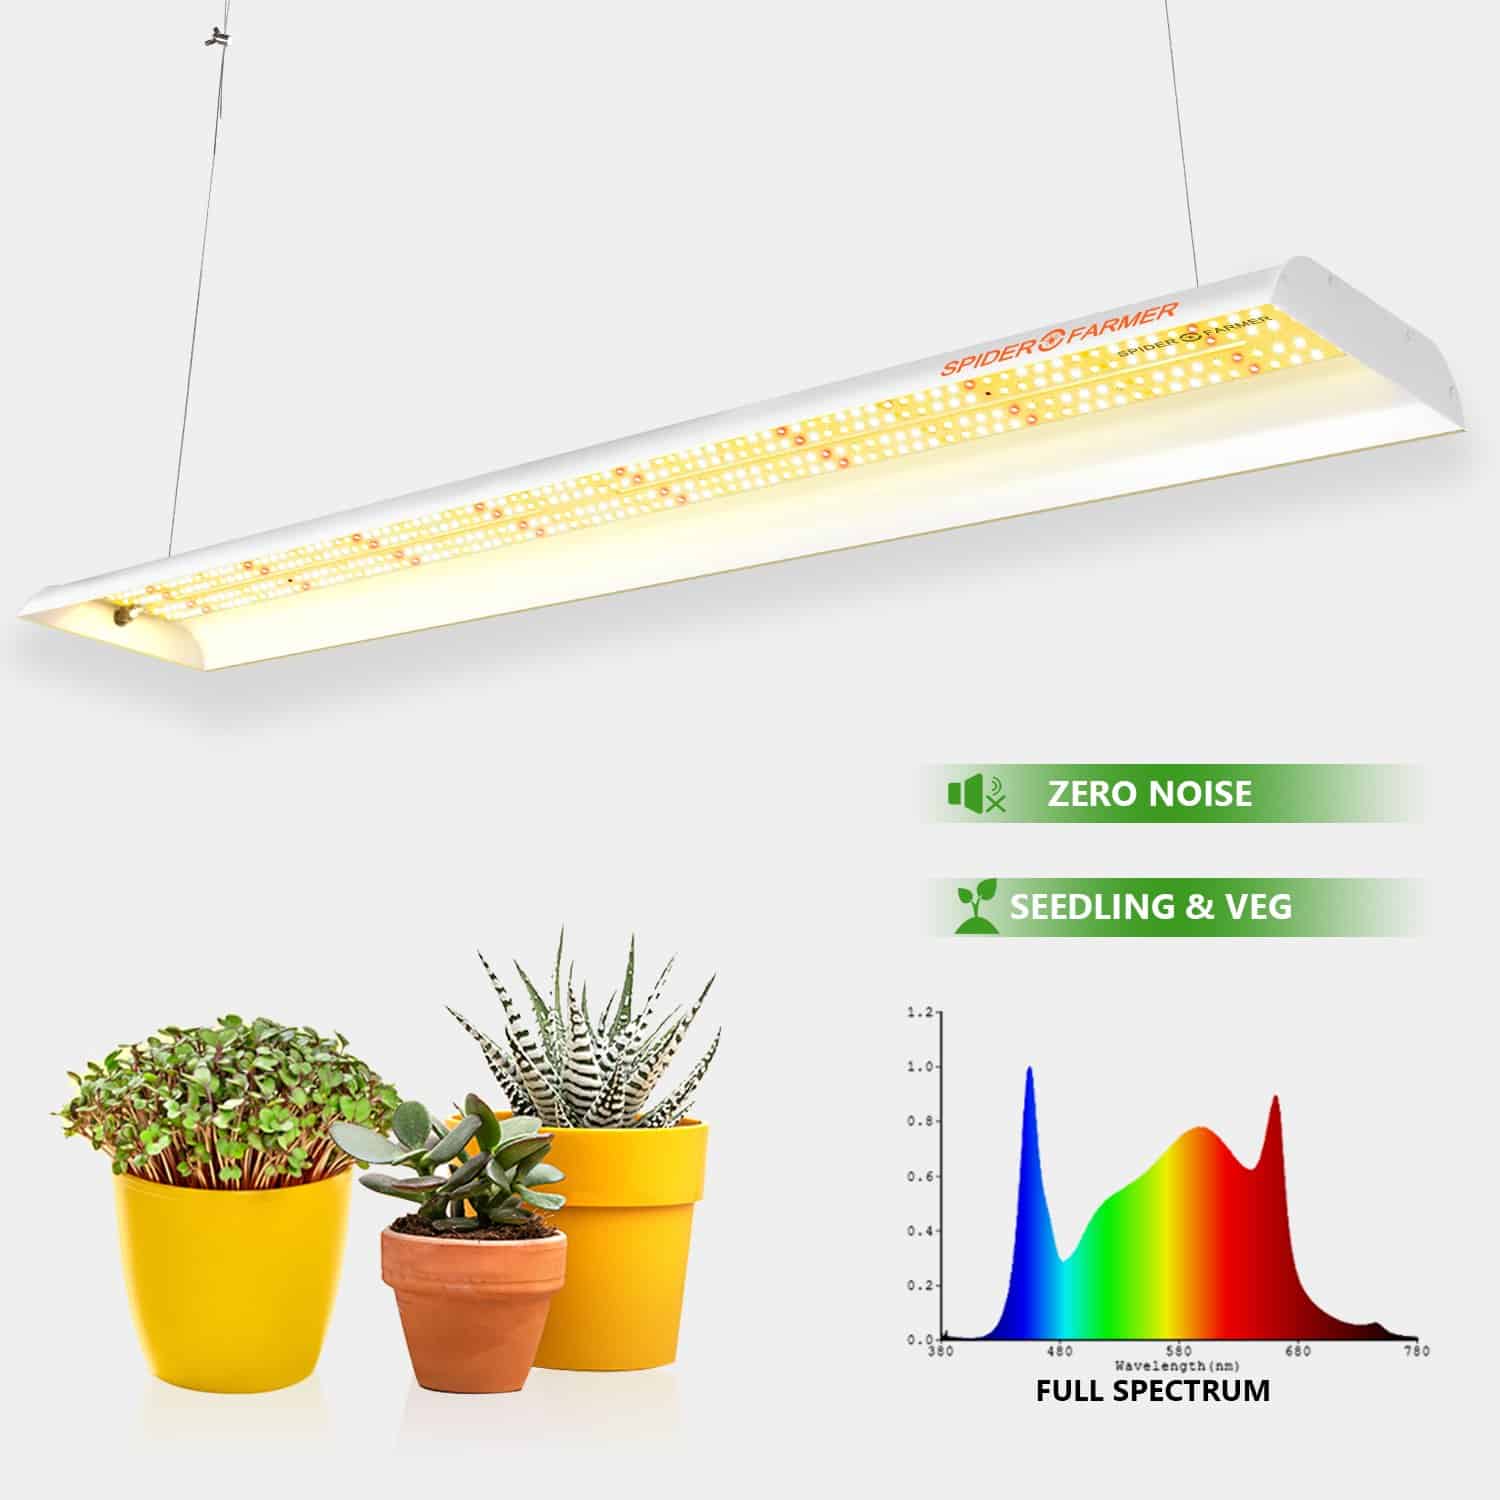 Spider Farmer® SF600 74W LED Grow Light For Vegetables